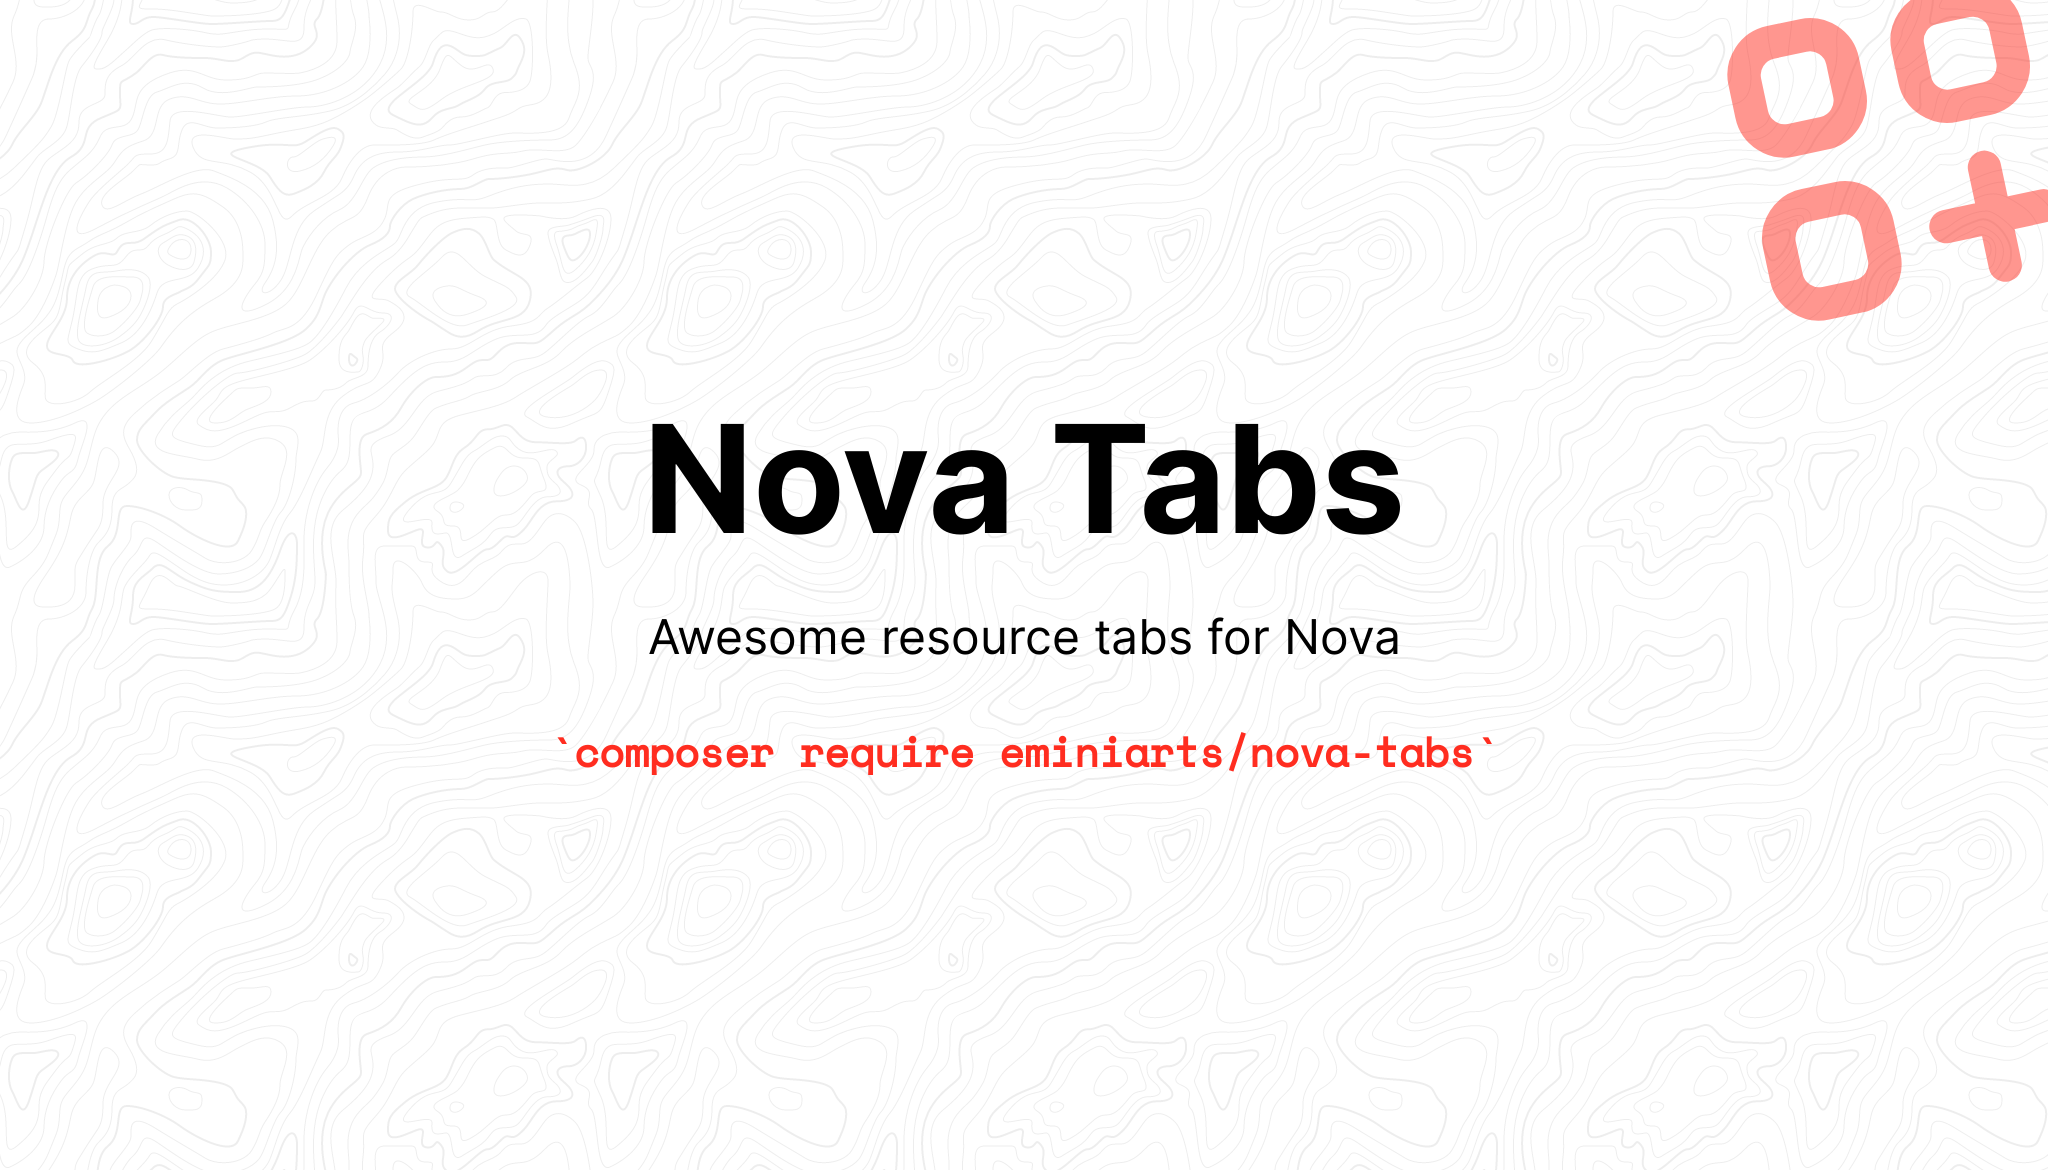 Nova Tabs, awesome resource tabs for Nova